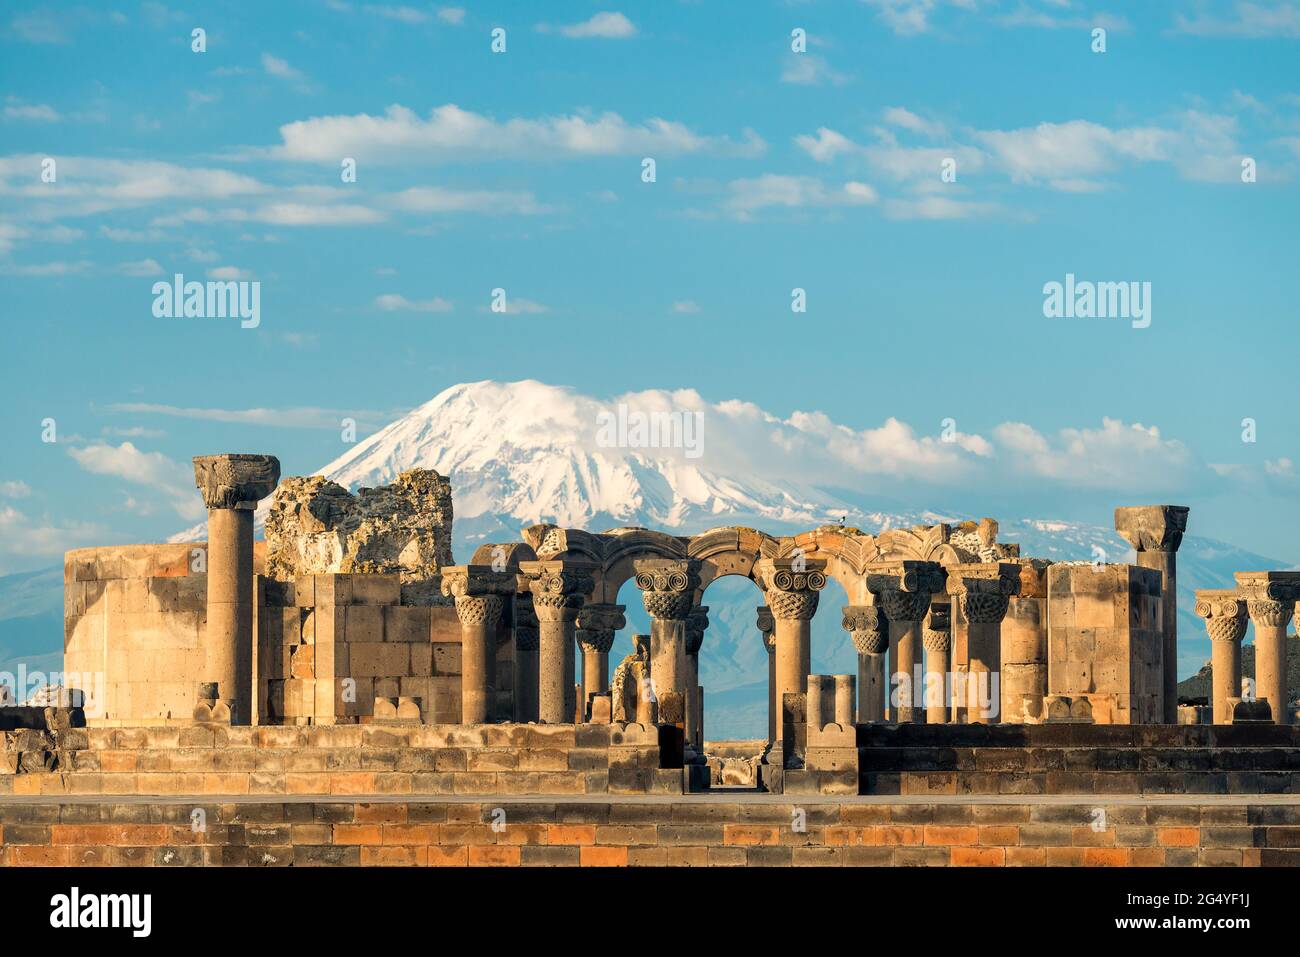 Zvartnots temple on the background of Mount Ararat - a landmark of Armenia Stock Photo